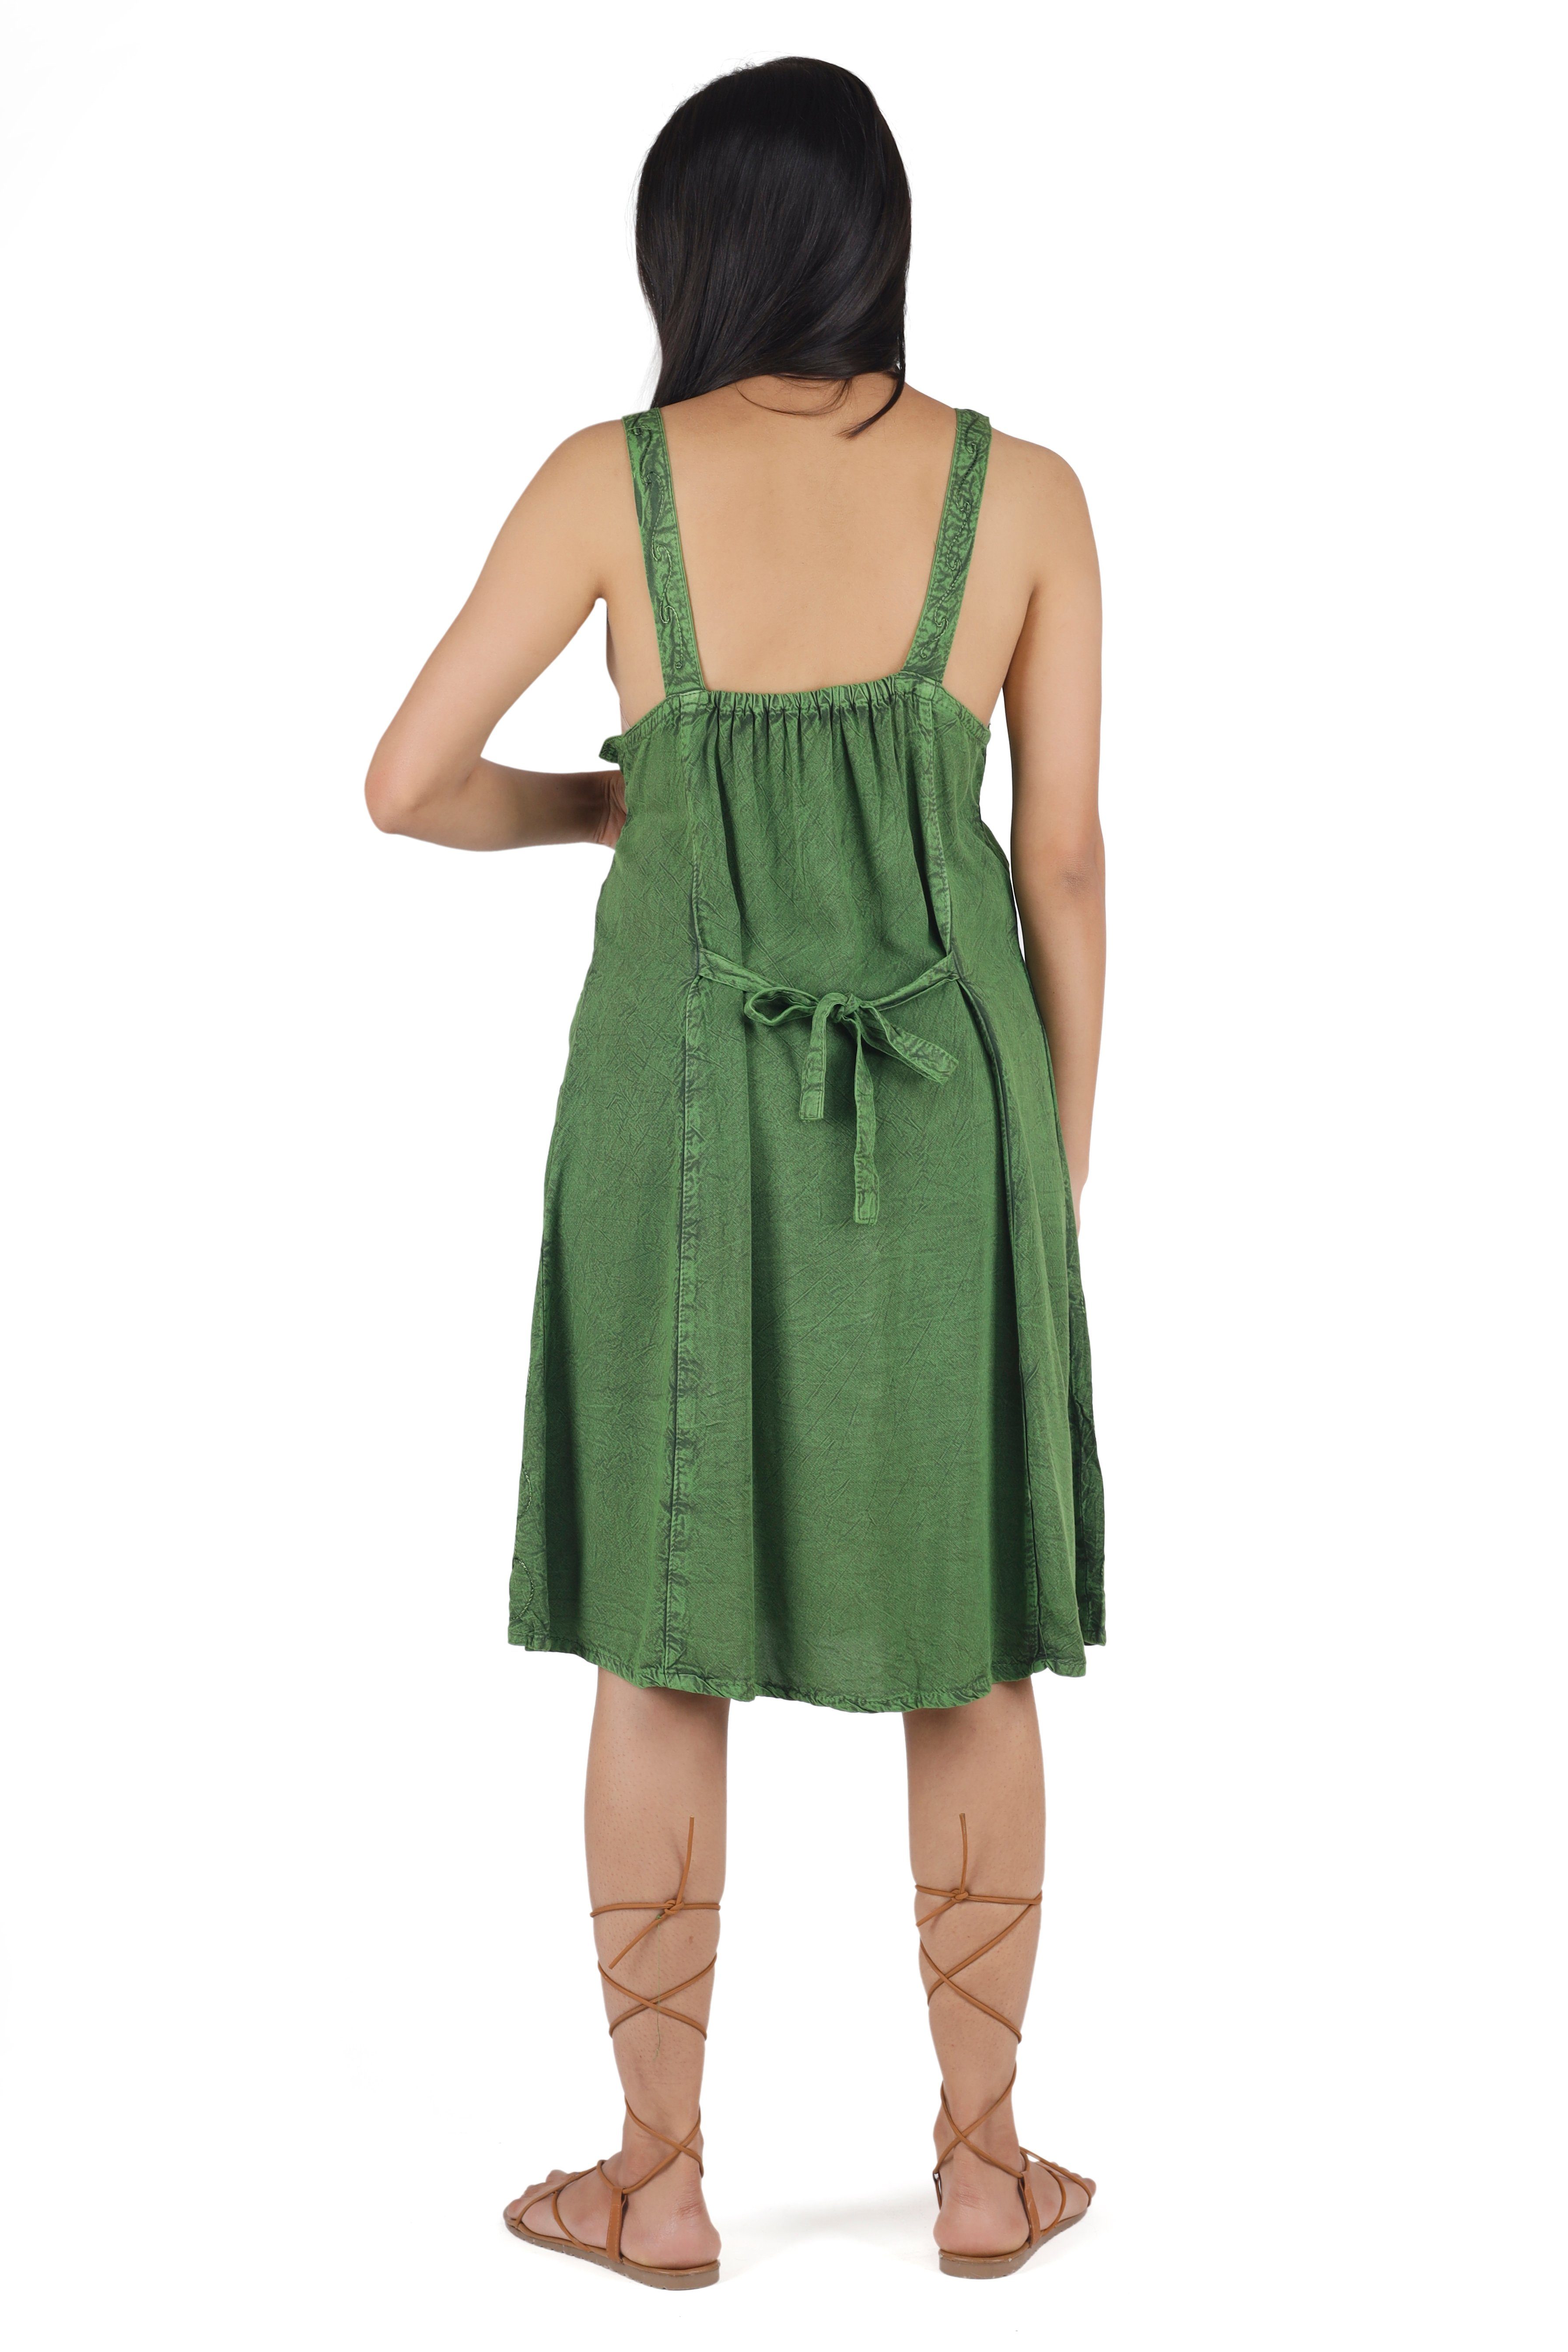 Guru-Shop grün Midikleid alternative 9 Bekleidung indisches -.. Kleid, Besticktes Design Boho Minikleid